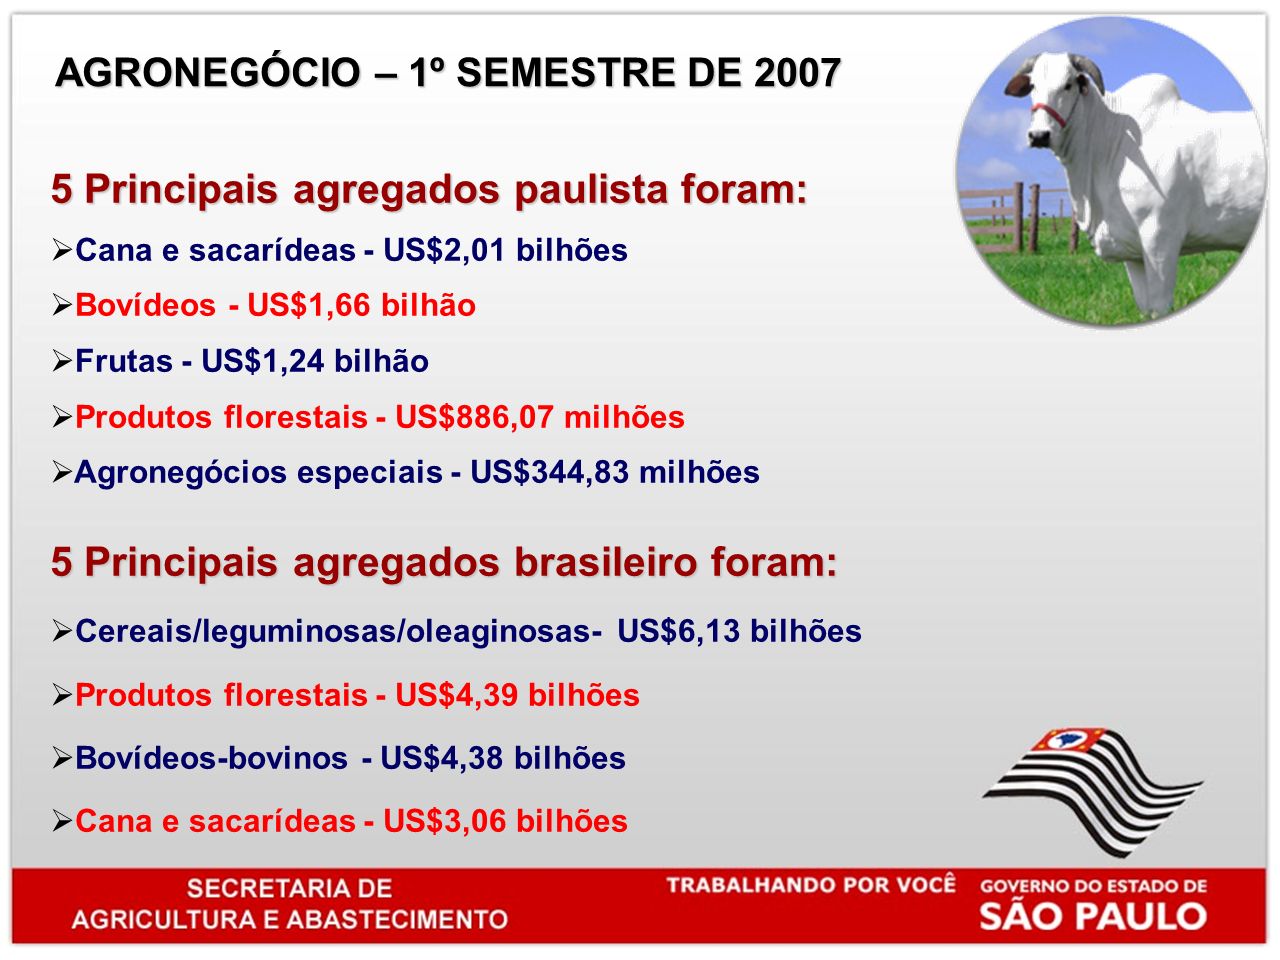 5 Principais agregados paulista foram: Cana e sacarídeas - US$2,01 bilhões Bovídeos - US$1,66 bilhão Frutas - US$1,24 bilhão Produtos florestais - US$886,07 milhões Agronegócios especiais - US$344,83 milhões 5 Principais agregados brasileiro foram: Cereais/leguminosas/oleaginosas- US$6,13 bilhões Produtos florestais - US$4,39 bilhões Bovídeos-bovinos - US$4,38 bilhões Cana e sacarídeas - US$3,06 bilhões